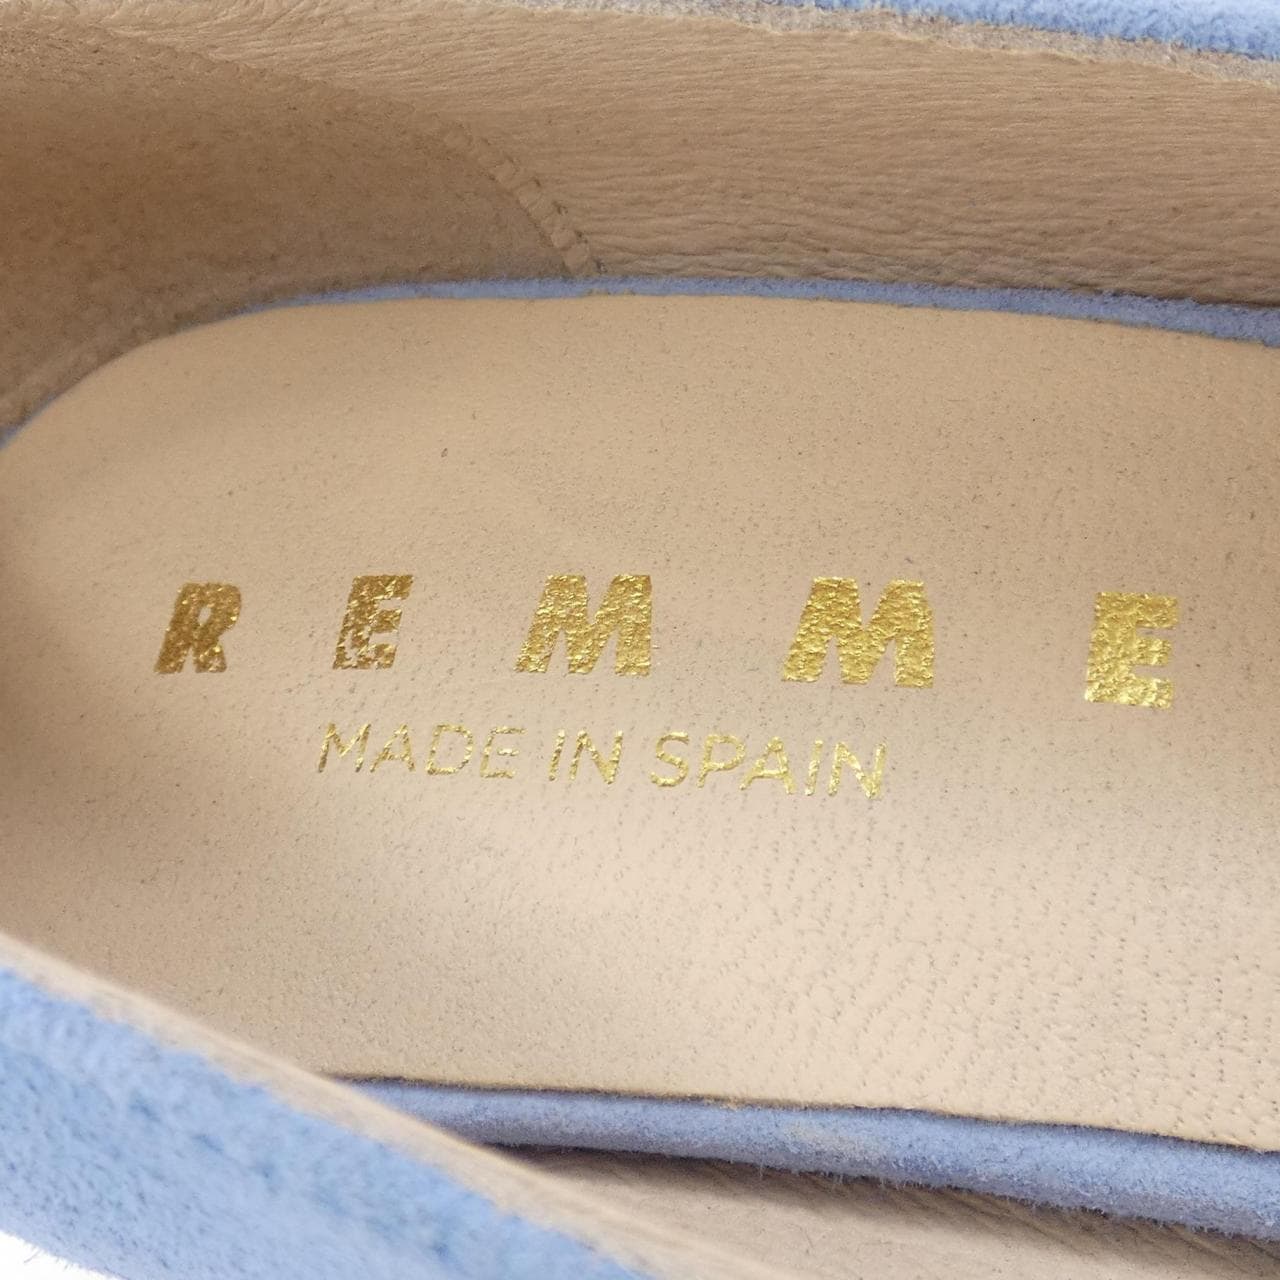 REMME shoes